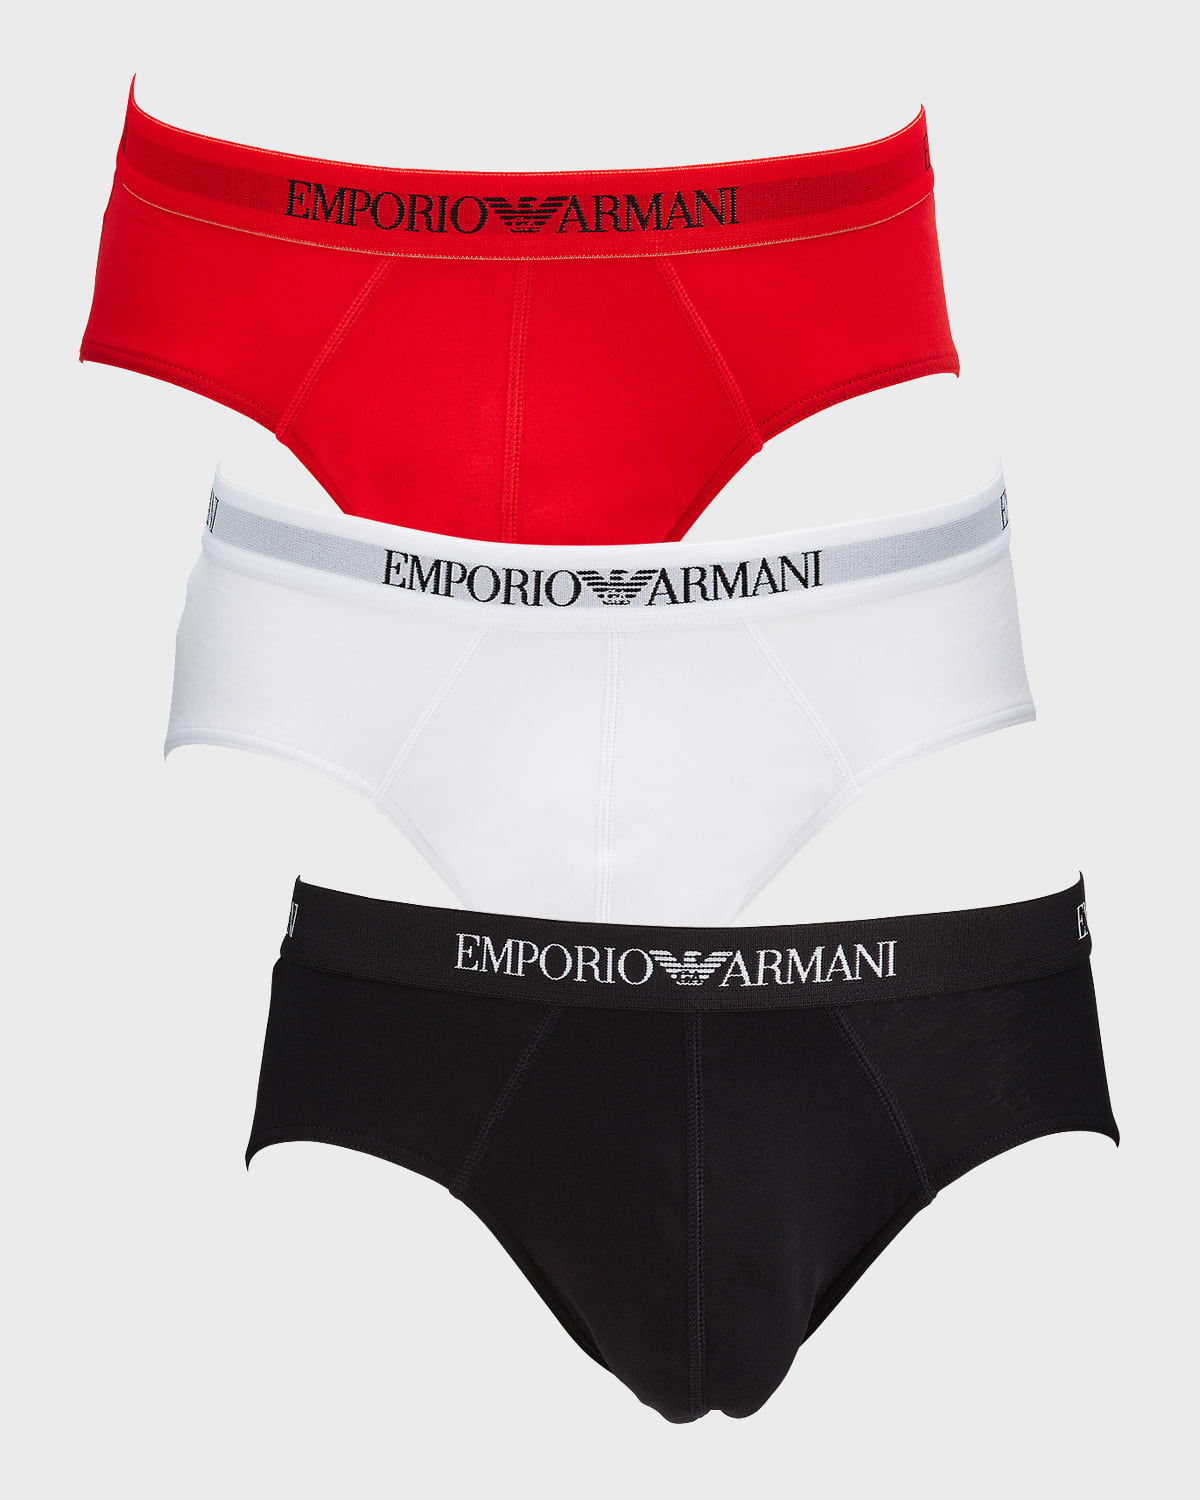 Emporio Armani Men's 3-pack Cotton Briefs In Red/white/black